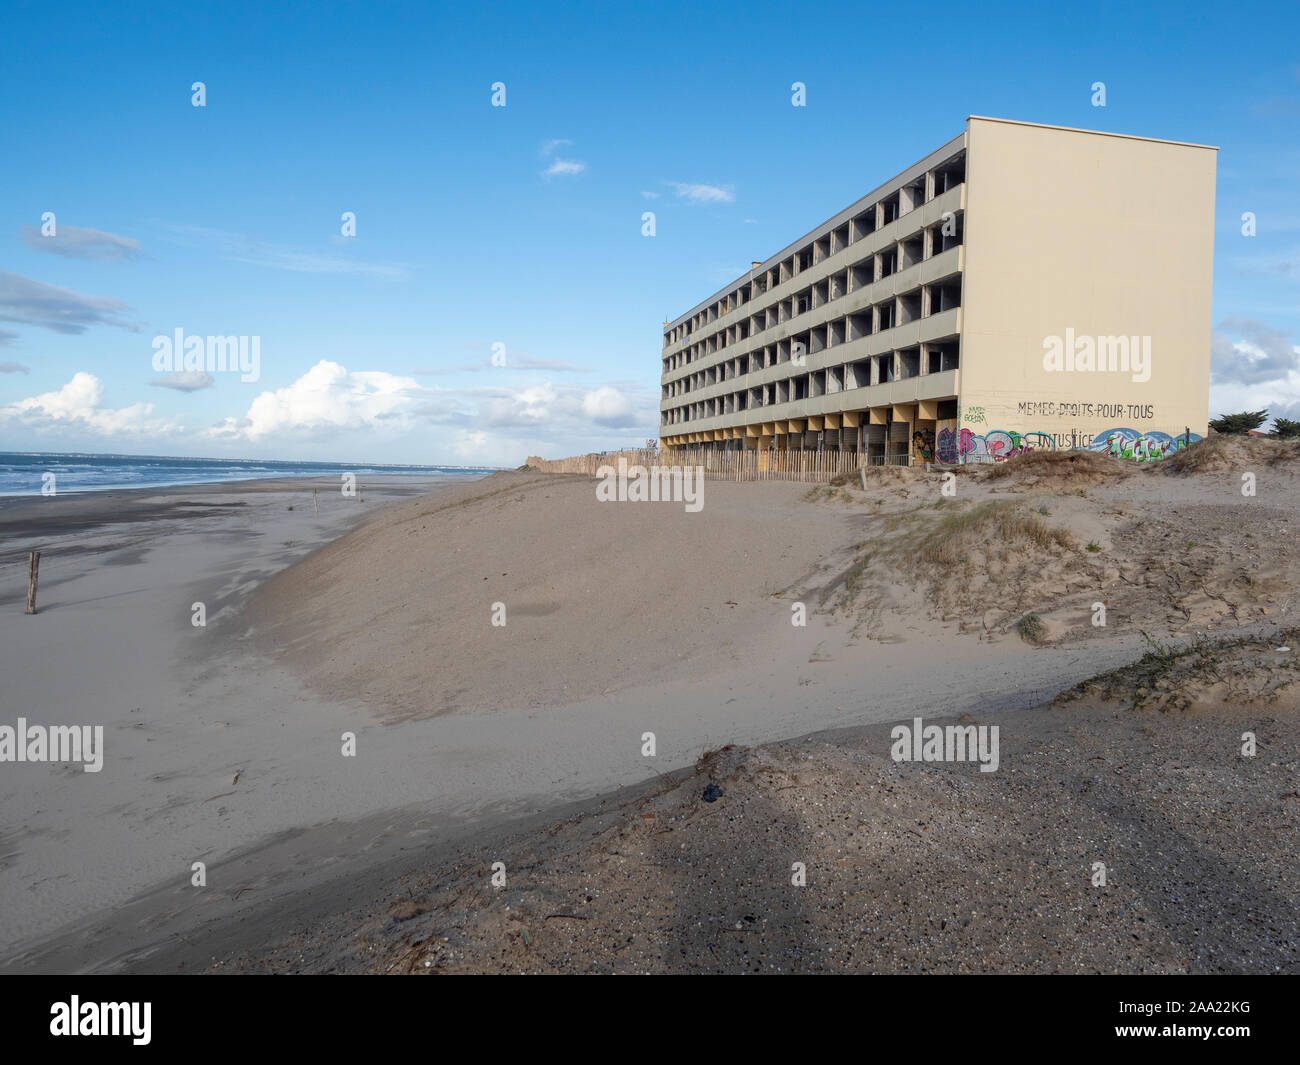 'Le segnale' edificio in attesa di distruzione a causa di erosione costiera. Soulac-sur-Mer, costa atlantica, Francia. Foto Stock